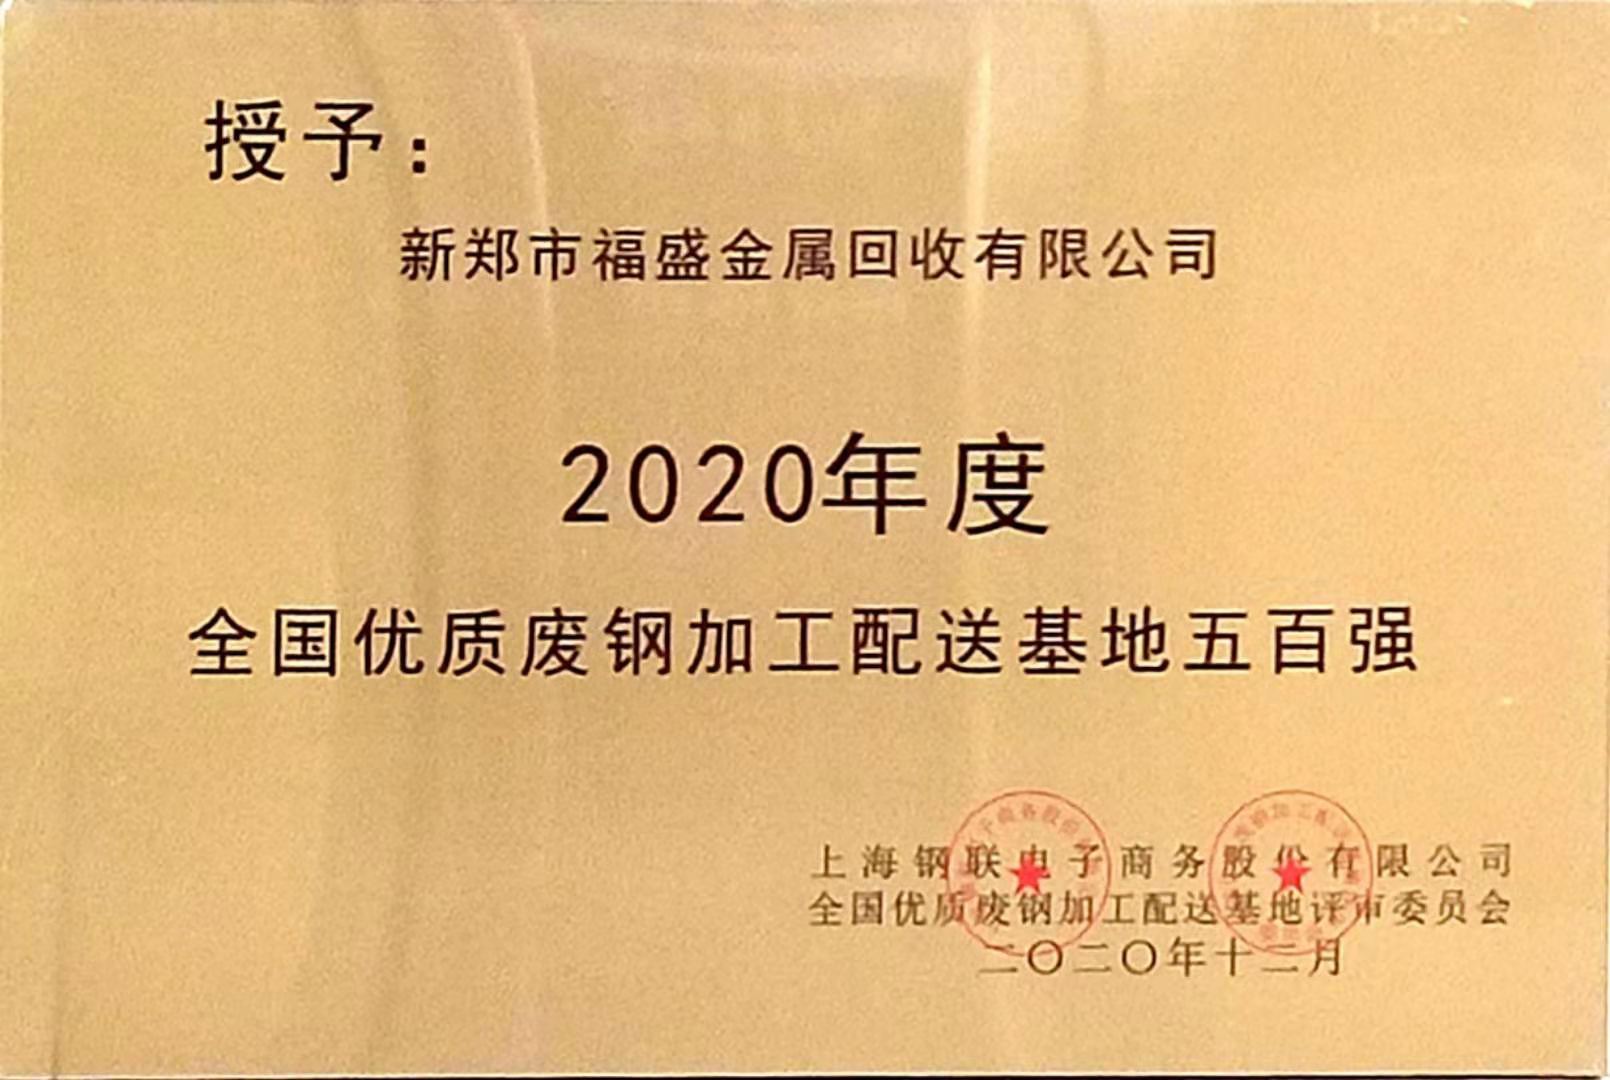 新郑市福盛金属回收有限公司荣获2020年度全国优质废钢加工配送基地五百强